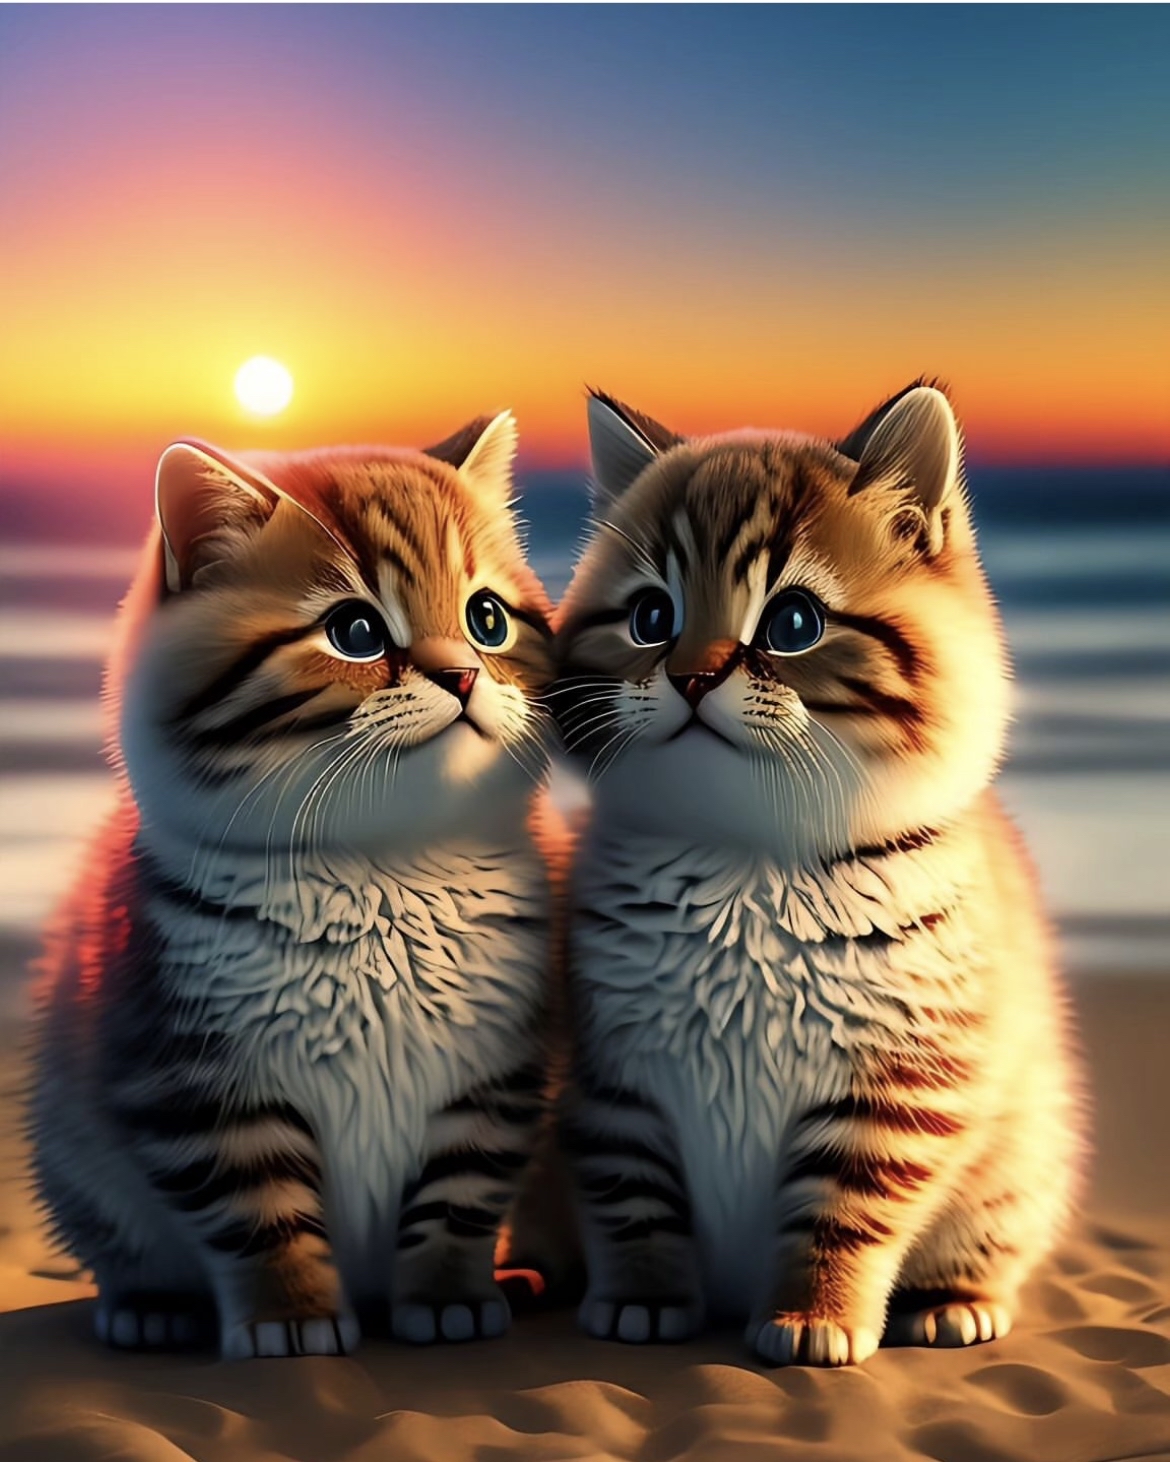 两只可爱的小猫咪,感觉心都被萌化了,仿佛整个世界都变得温柔起来